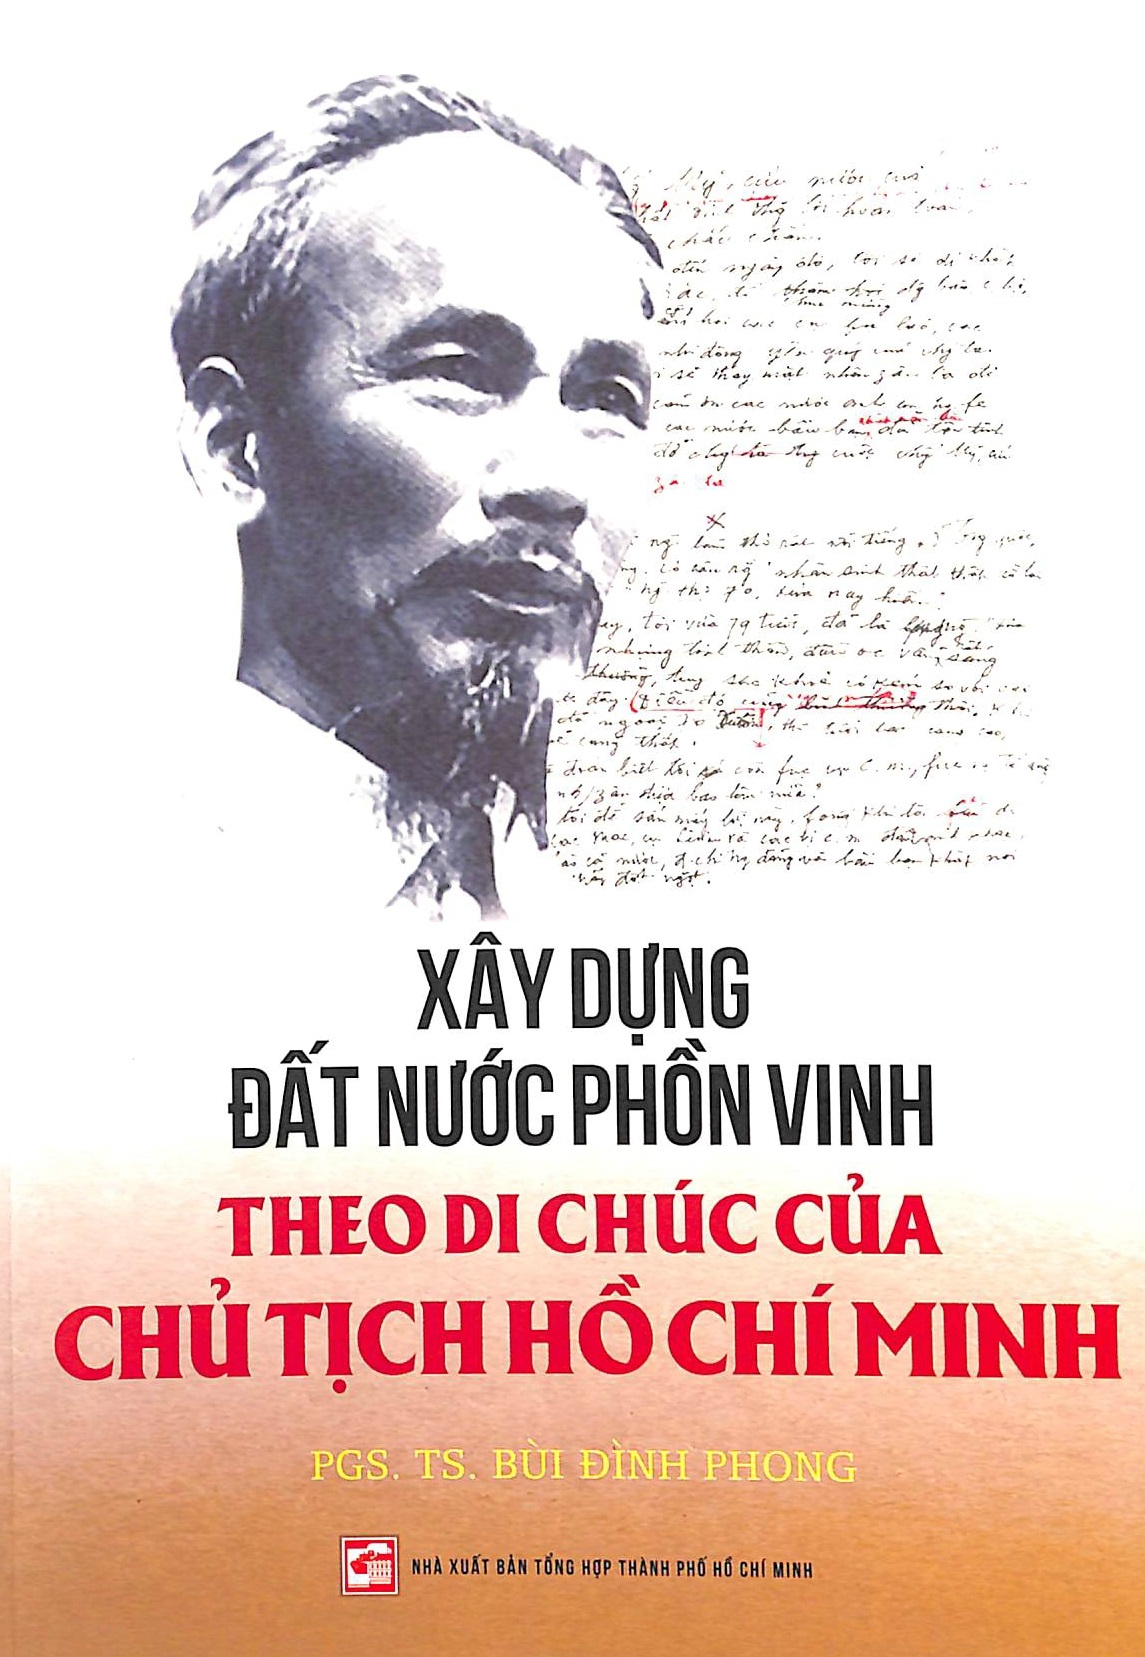 Xây dựng đất nước phồn vinh theo di chúc của Chủ tịch Hồ Chí Minh